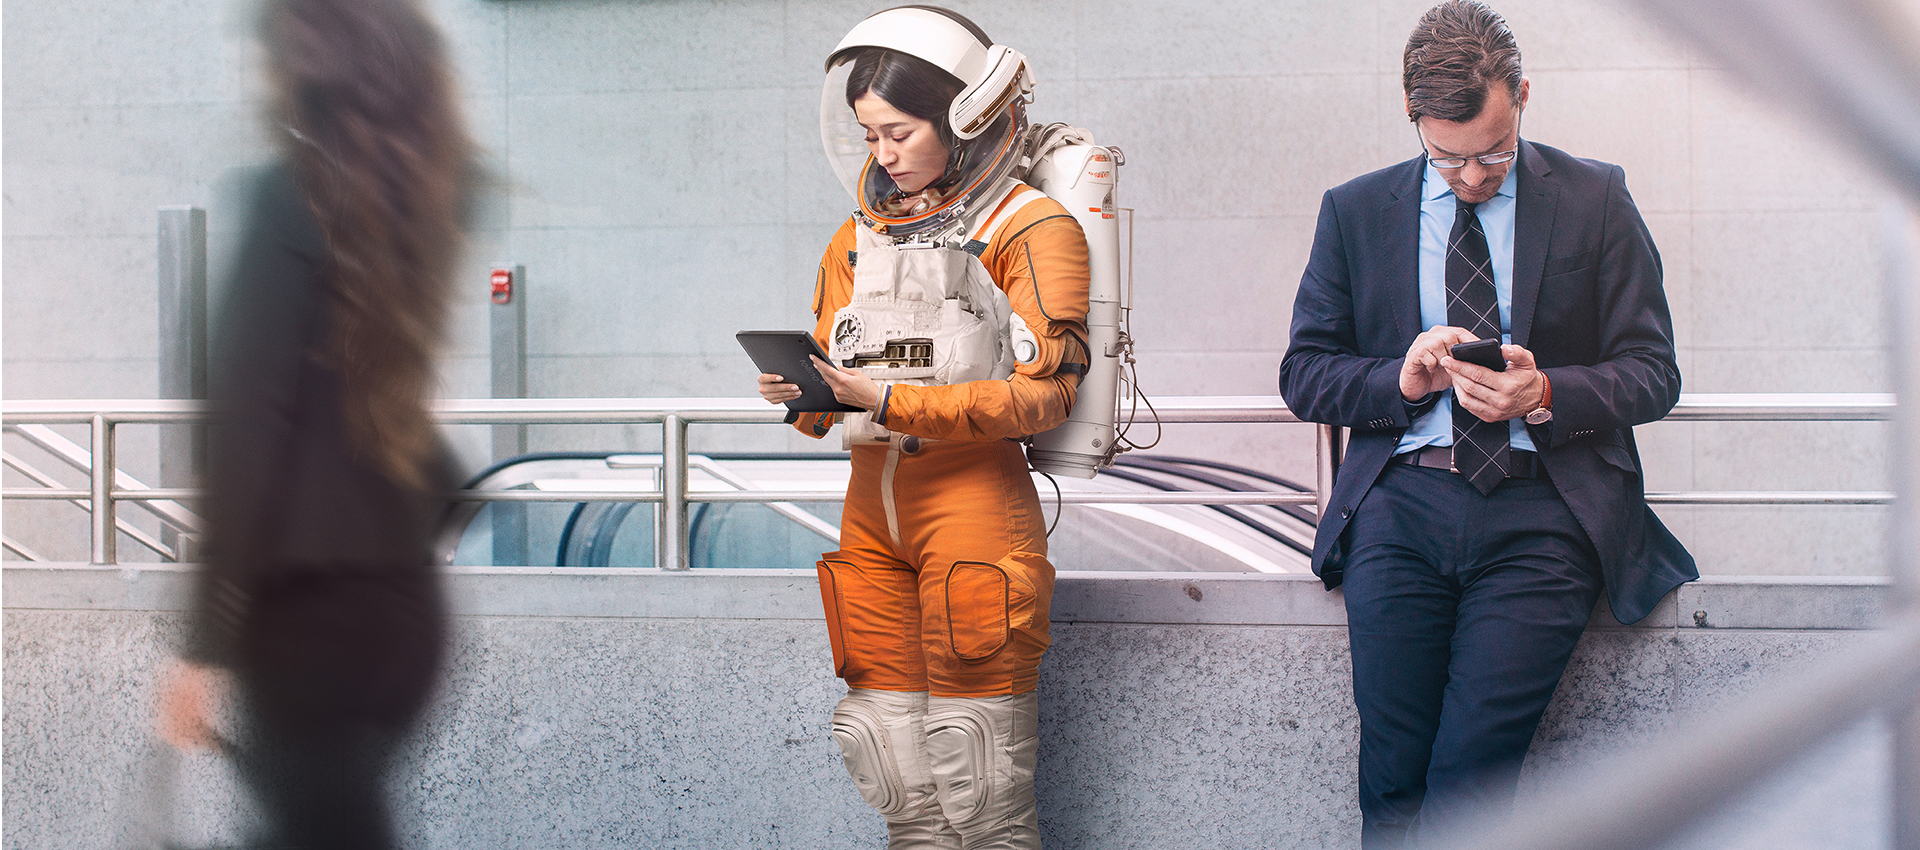 Astronautin mit tolino eReader liest neben wartendem Mann am Bahnsteig